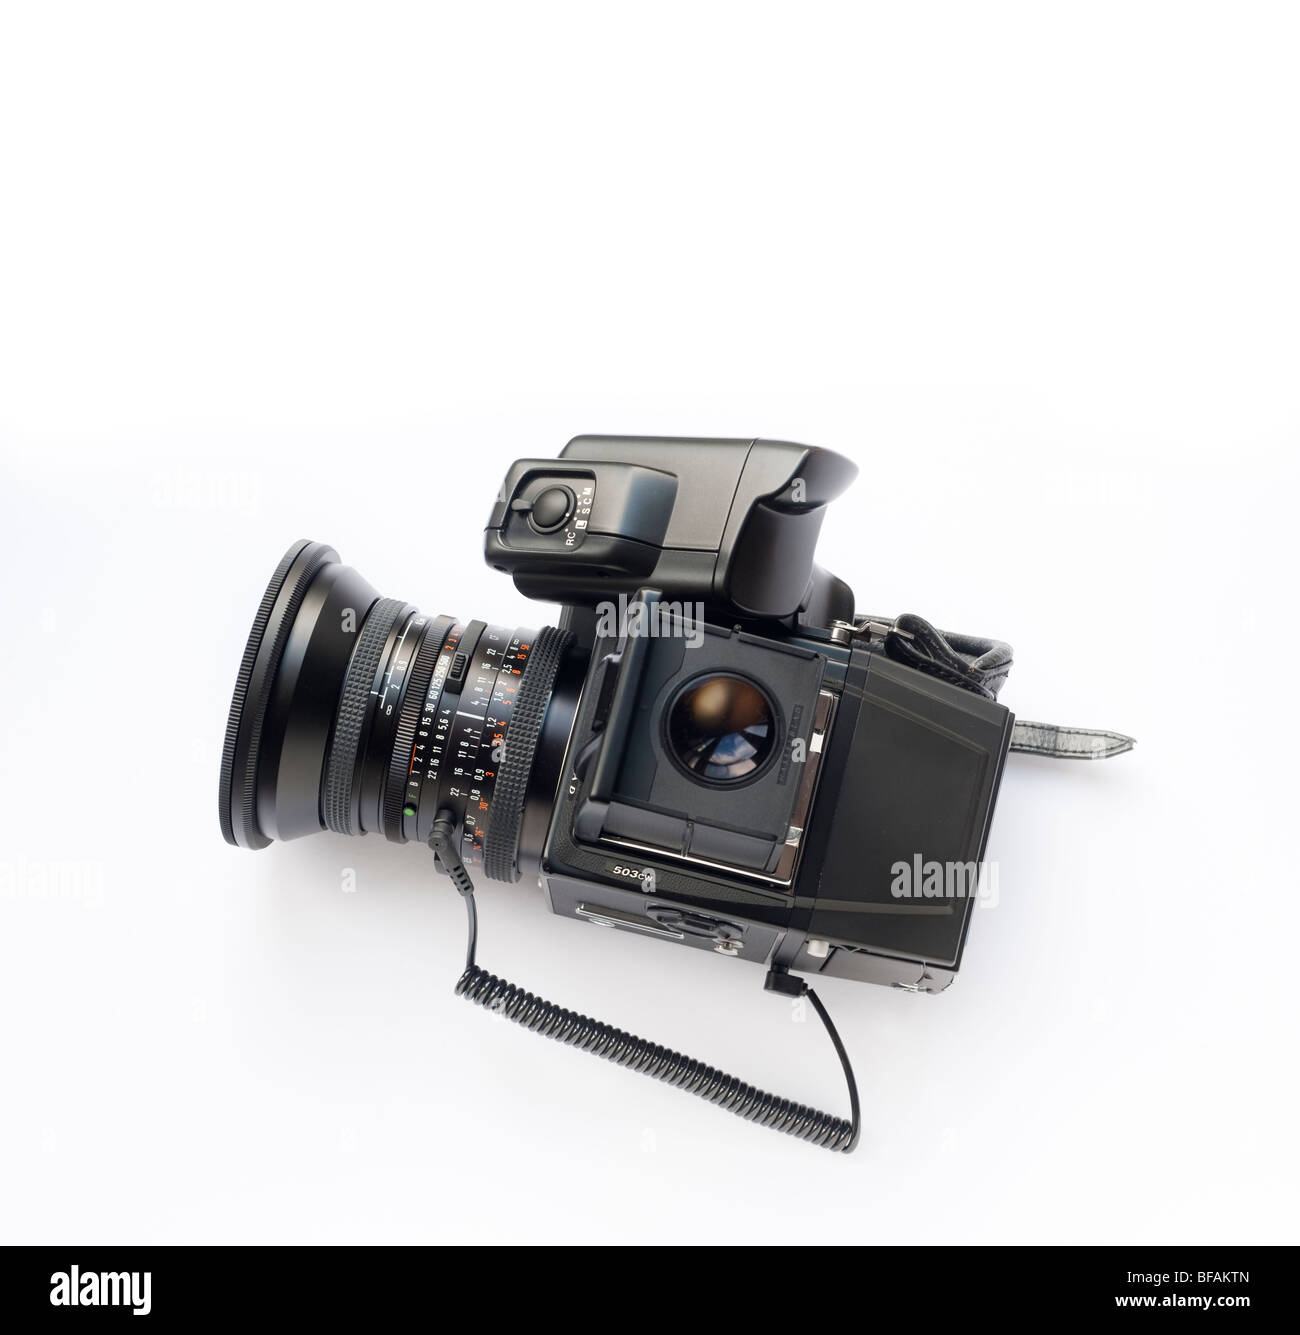 Hasselblad 503 cw mit Digitalback auf weißem Hintergrund Stockfoto